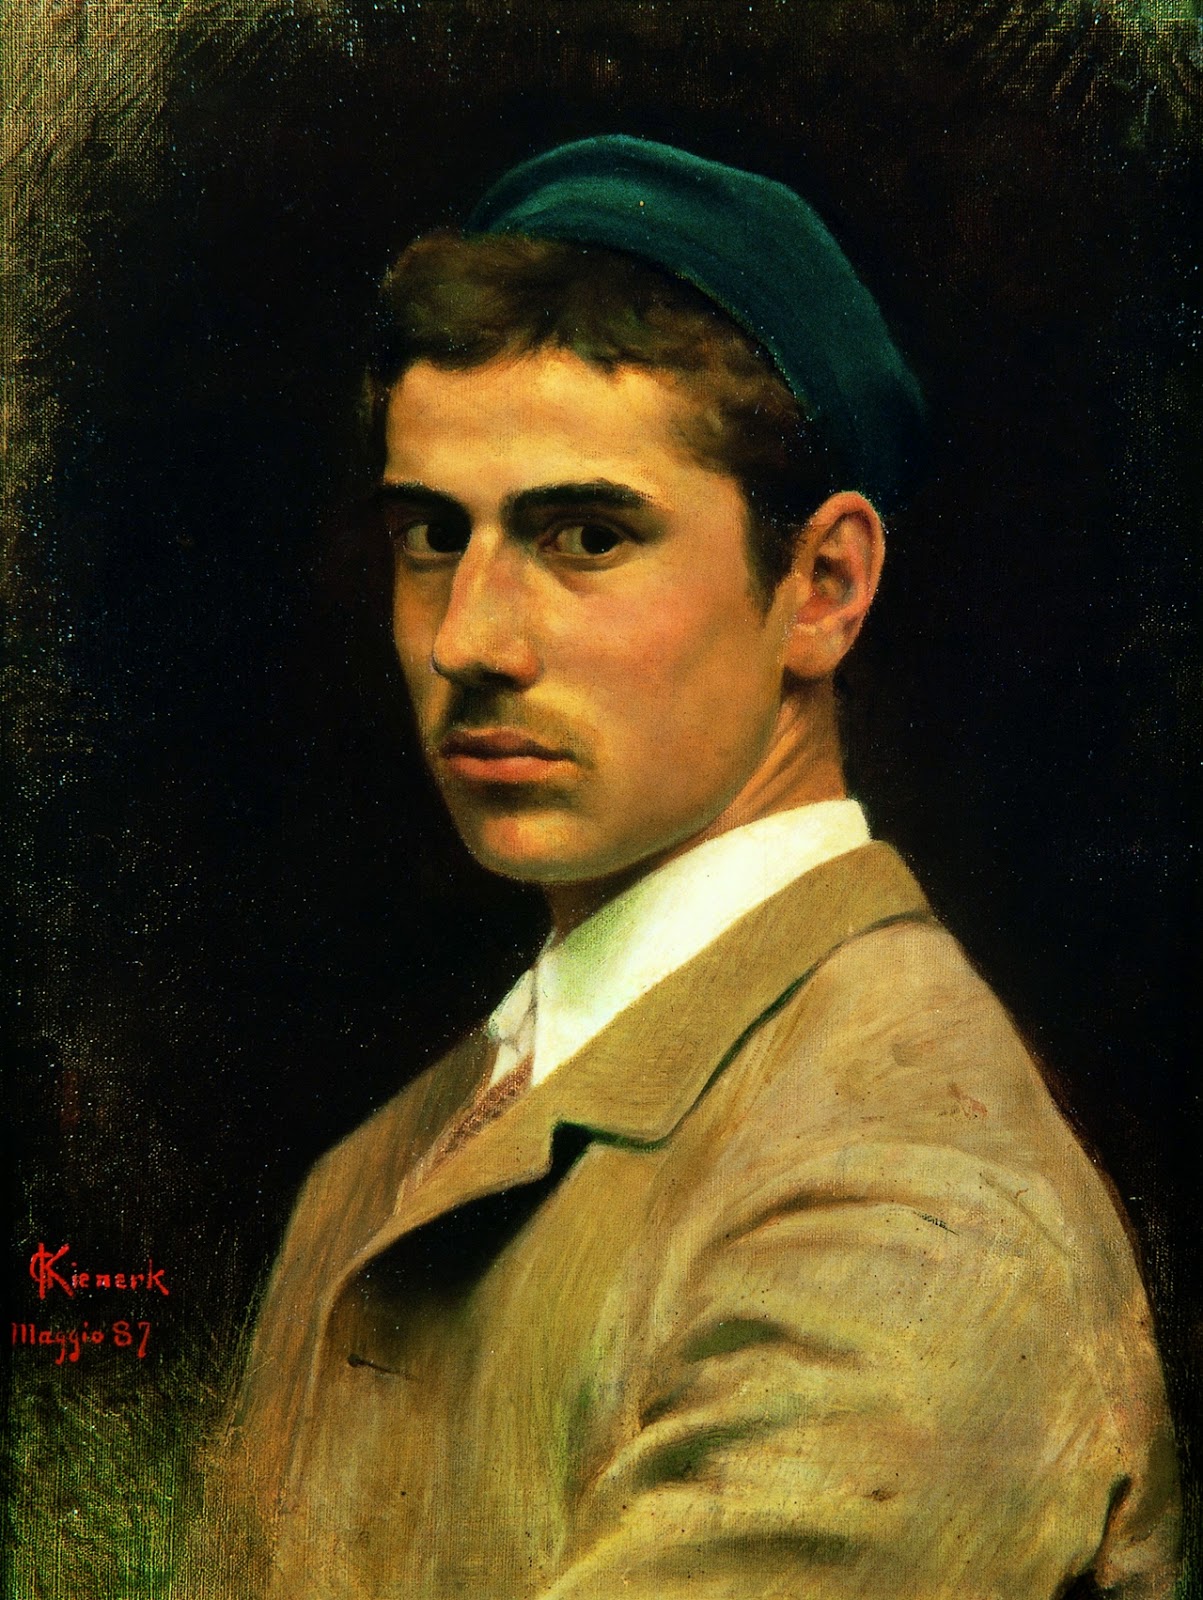 Giorgio+Kienerk-1869-1948 (33).jpg